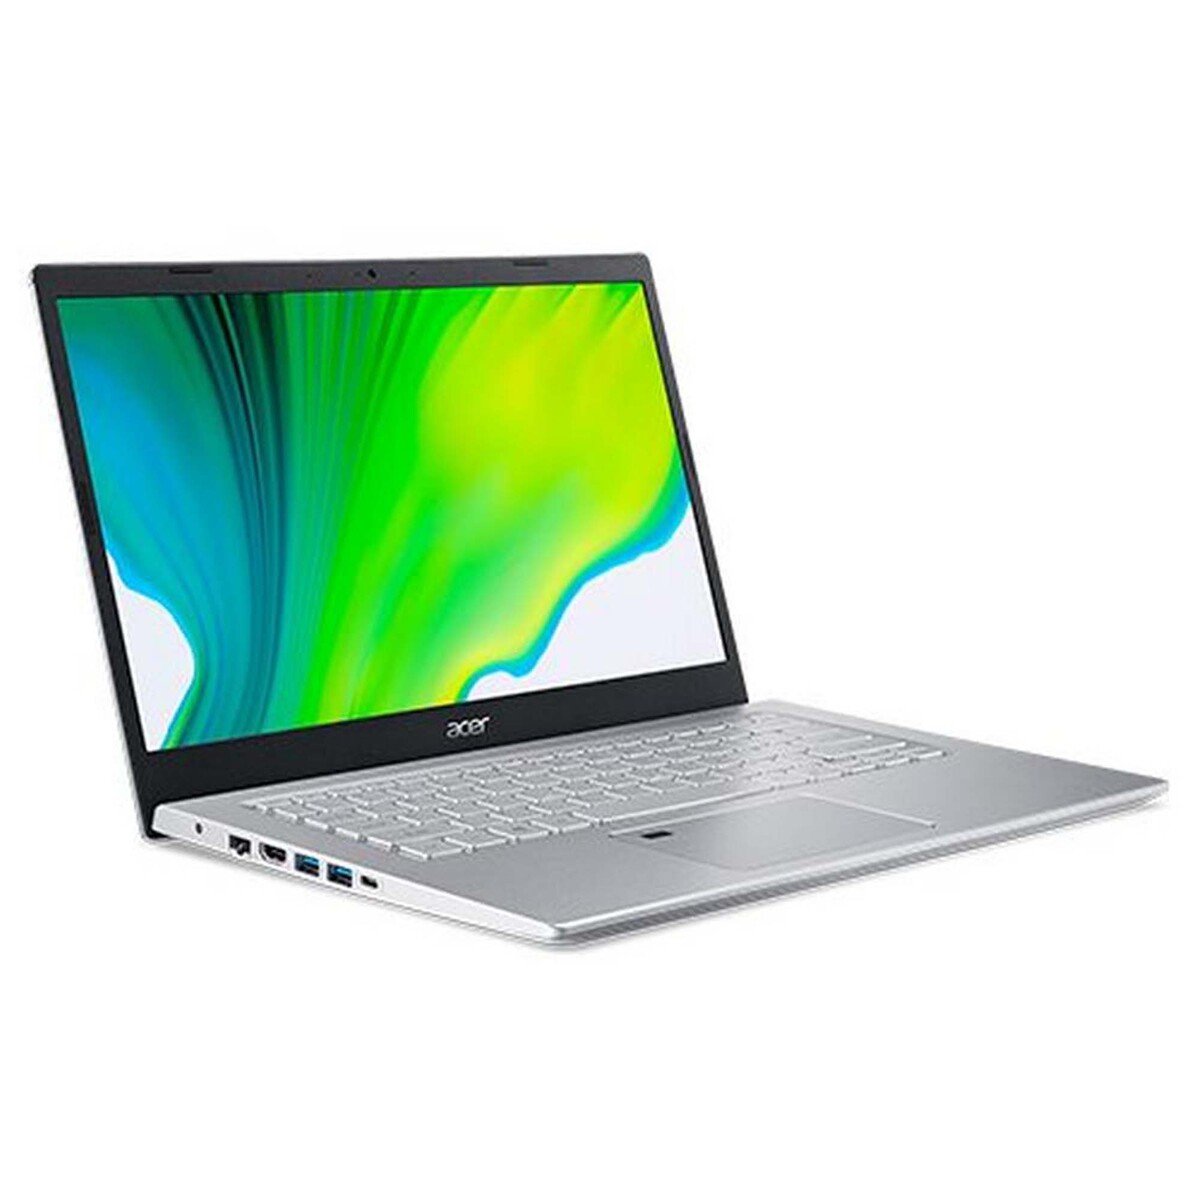 Acer Aspire 5 A715,Laptop(A514-54G-72KL),Intel Core i7 1165G7,12GB RAM,512GB SSD, 14.0"FHD,Windows 10,Black,English-Arabic Keyboard